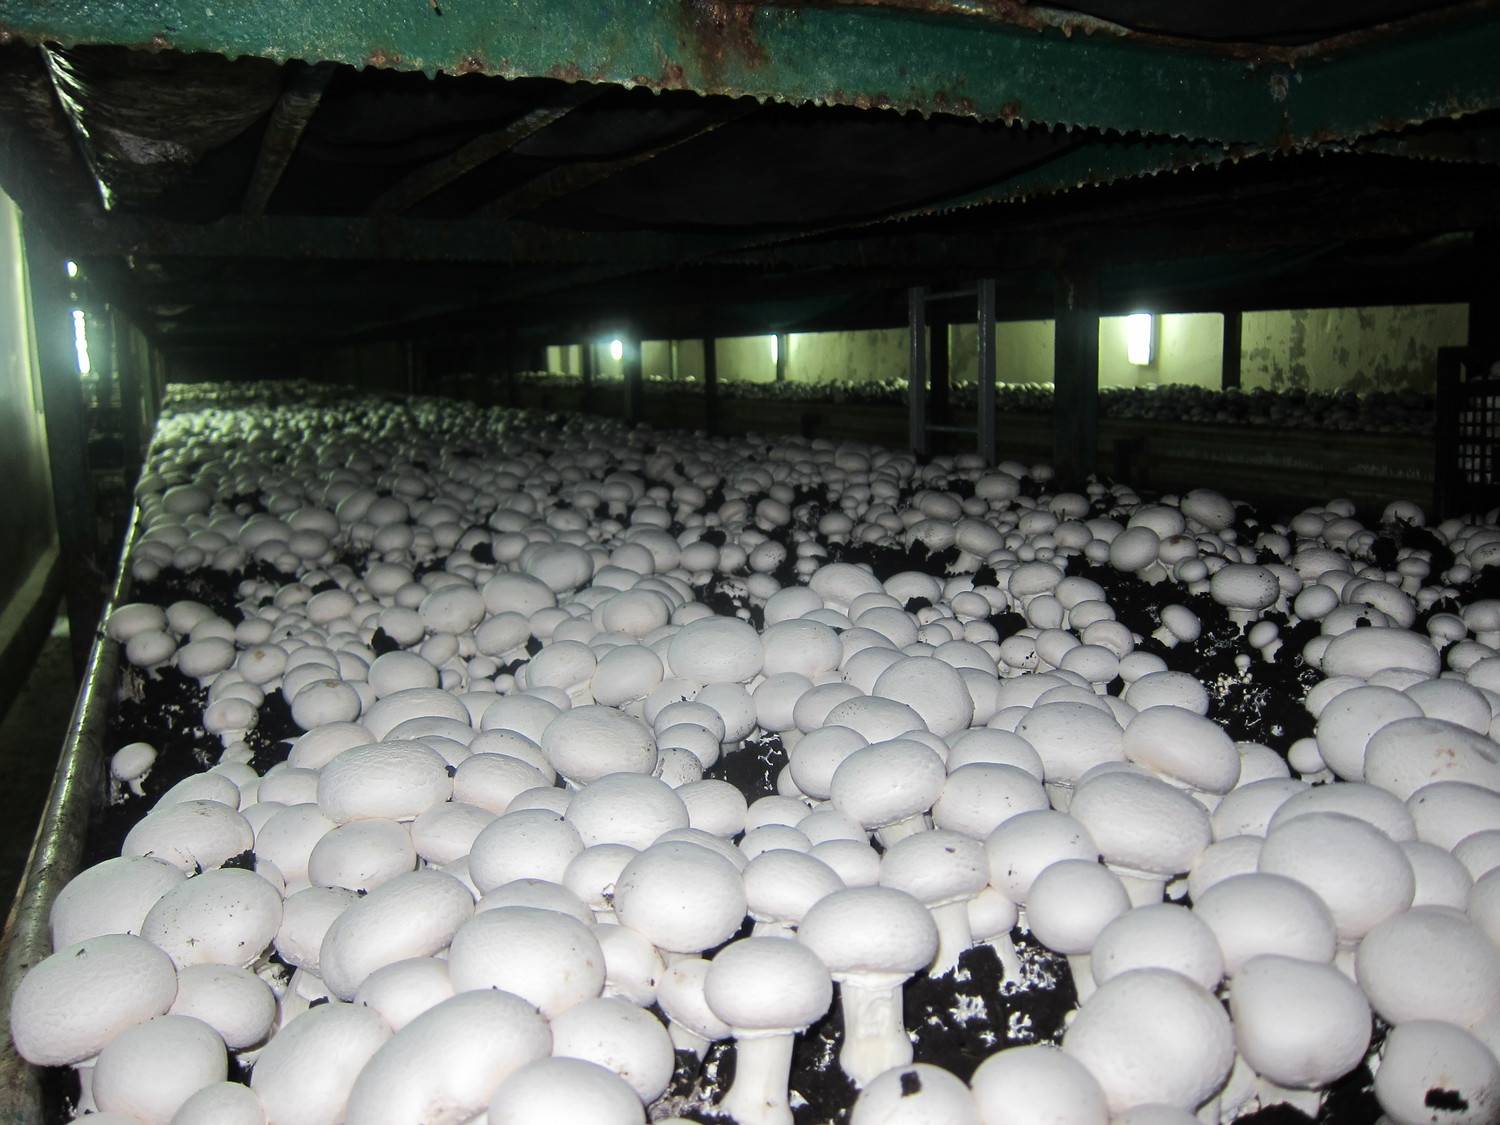 Выращивание грибов технология